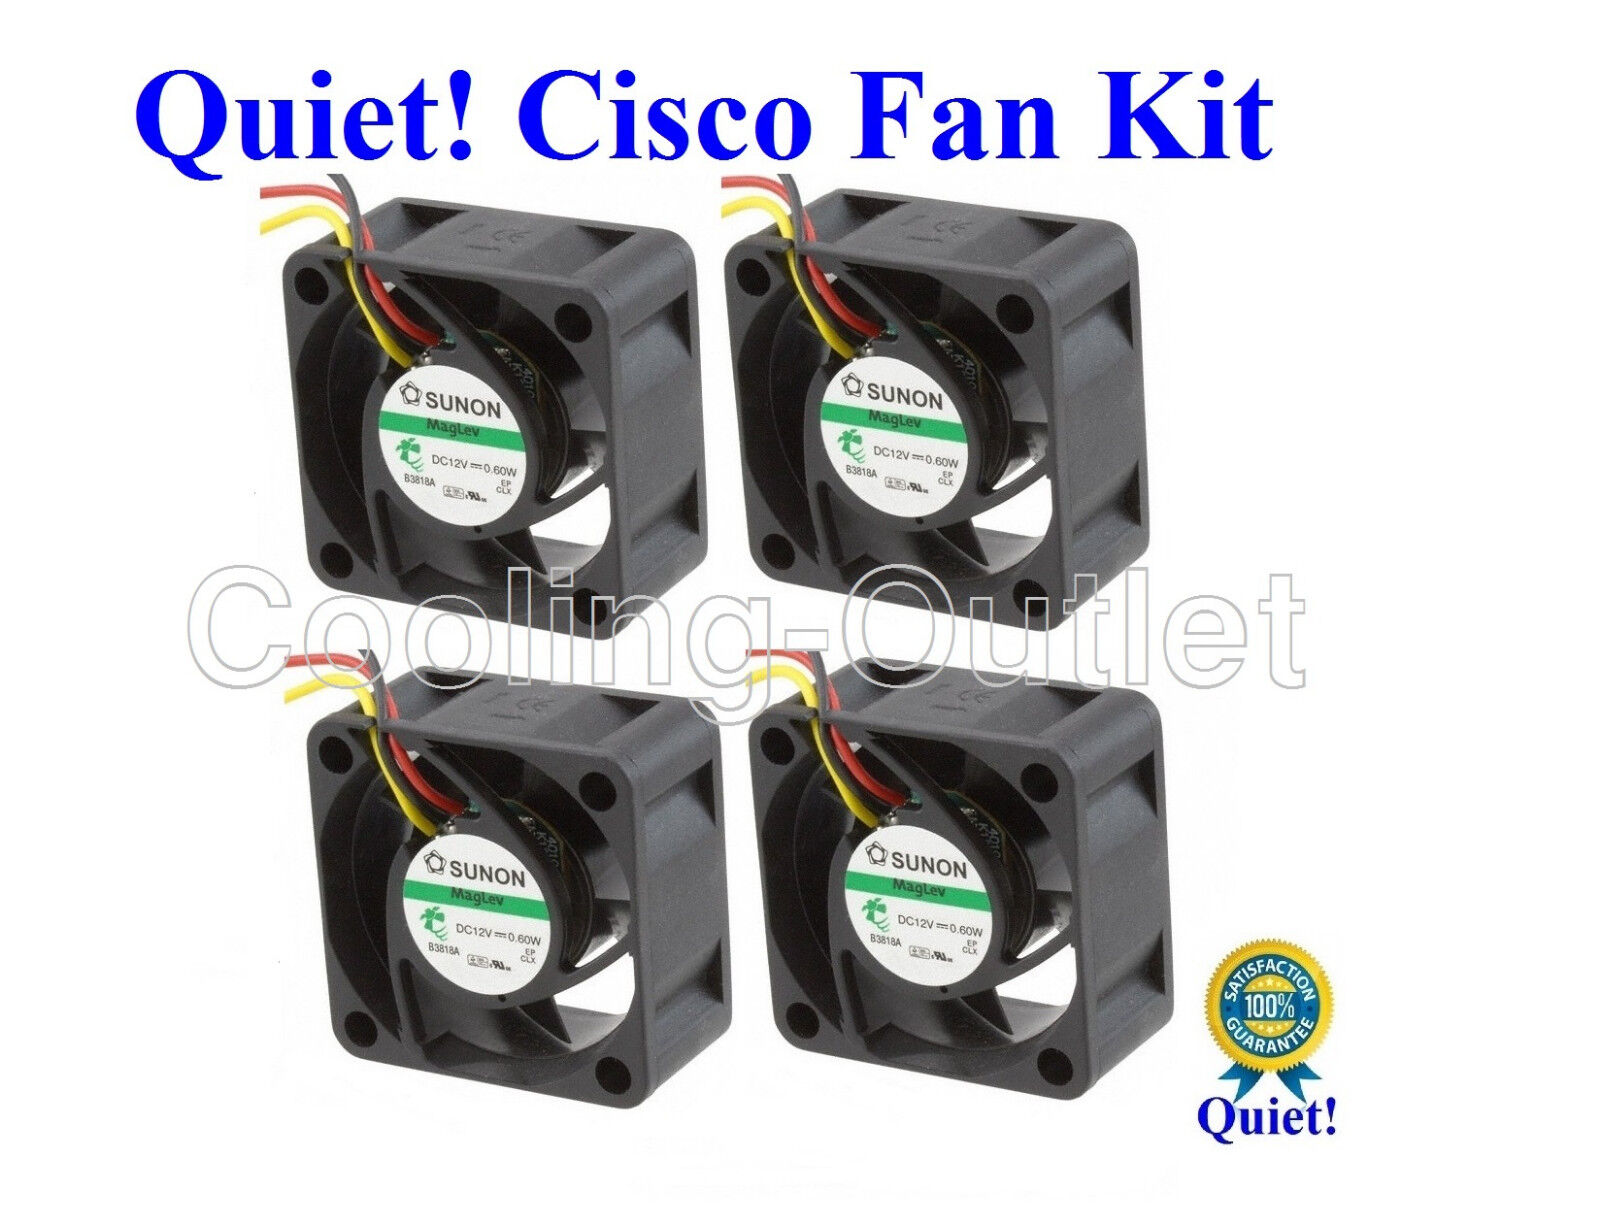 Quiet Version Cisco SF300-24MP Fan Kit, 4x Sunon MagLev or Delta low noise fans